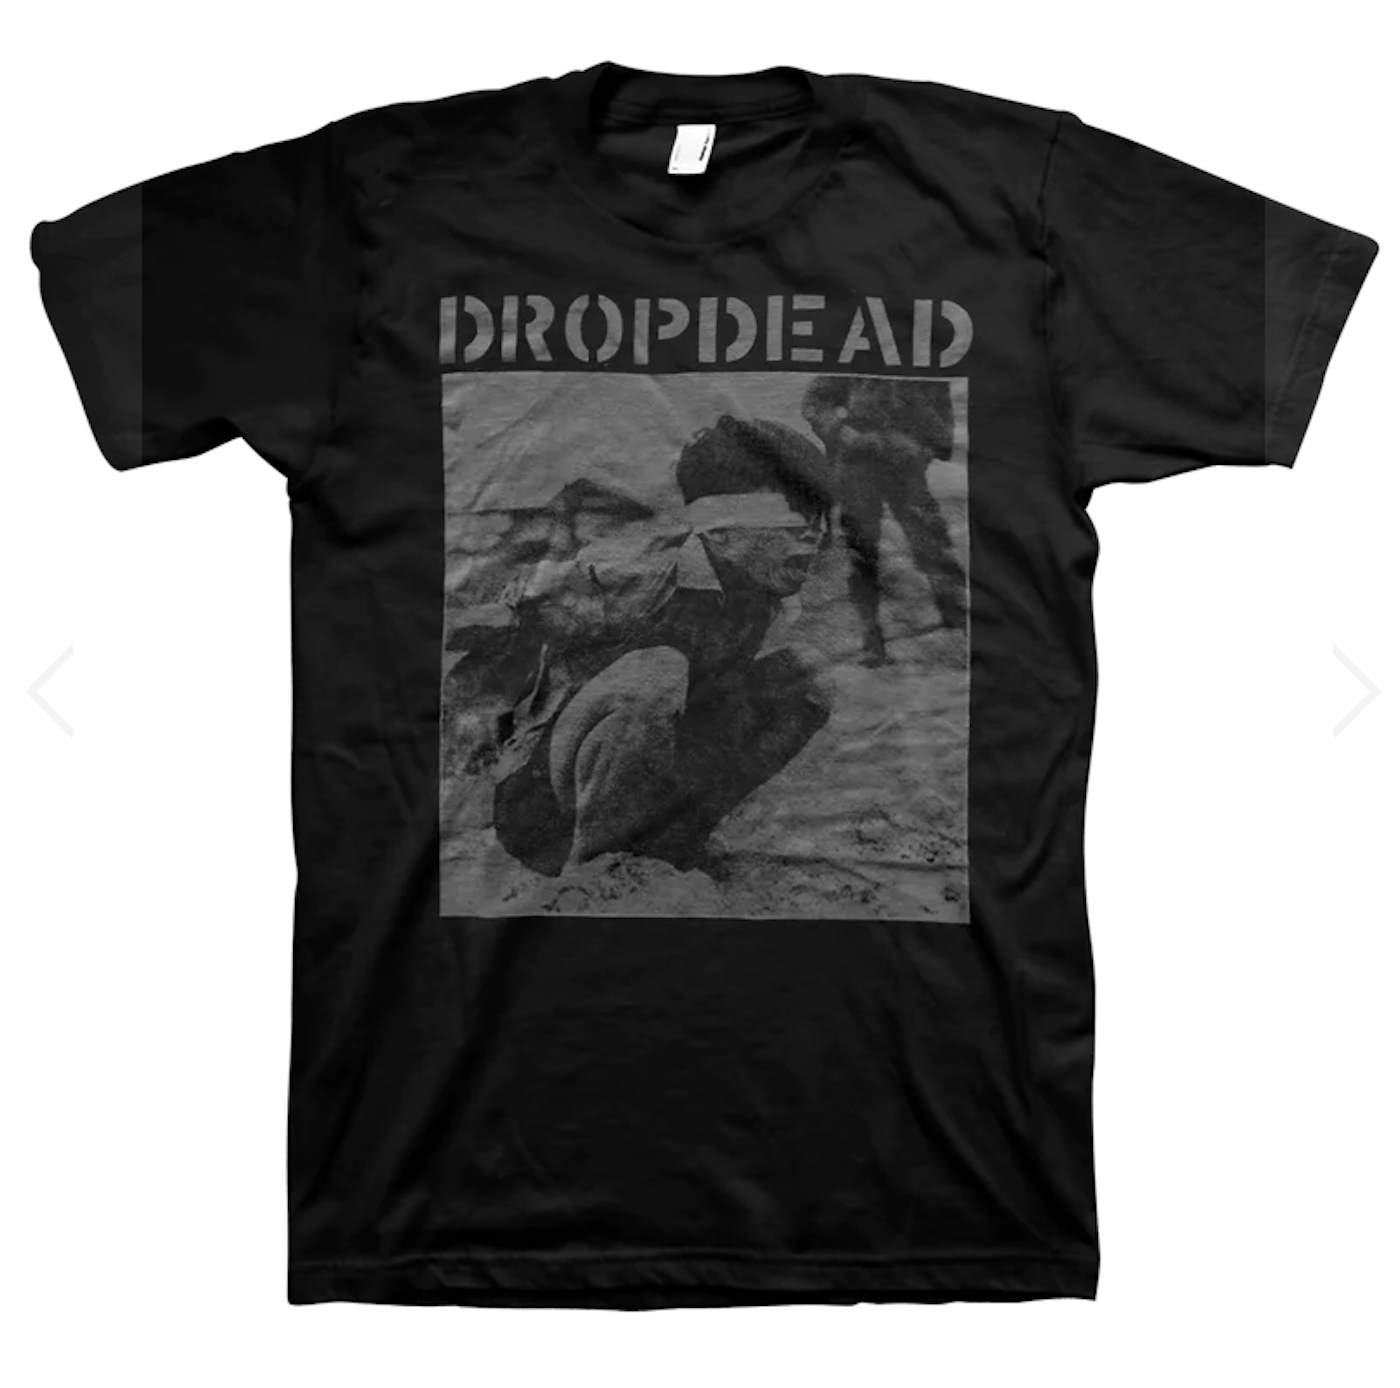 Drop Dead Black T Shirt